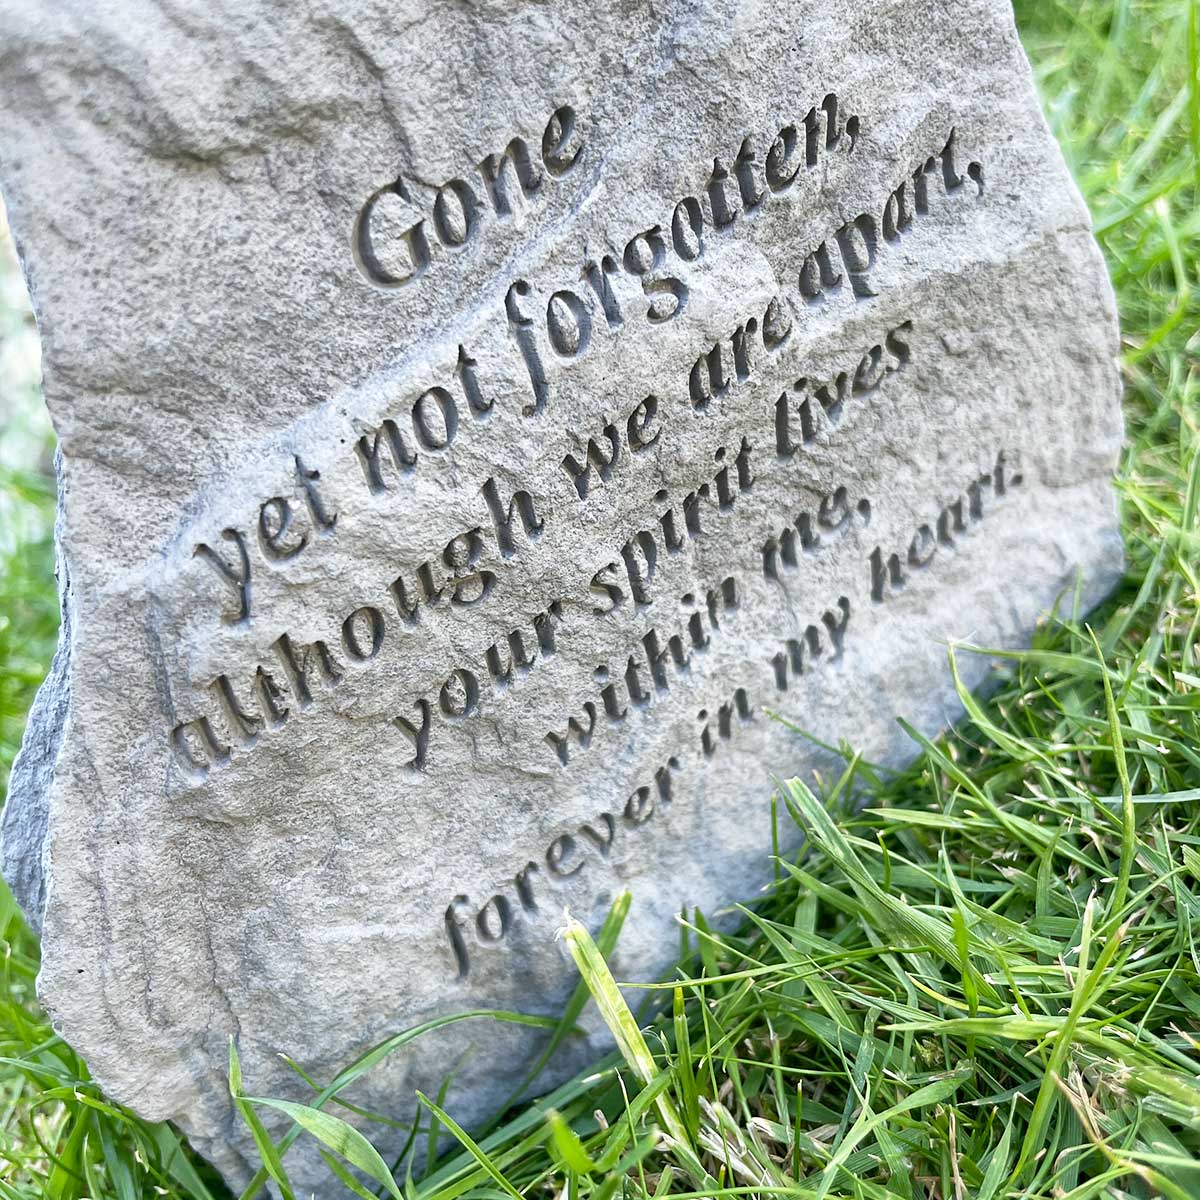 'Gone Yet Not Forgotten' Outdoor Memorial Stone